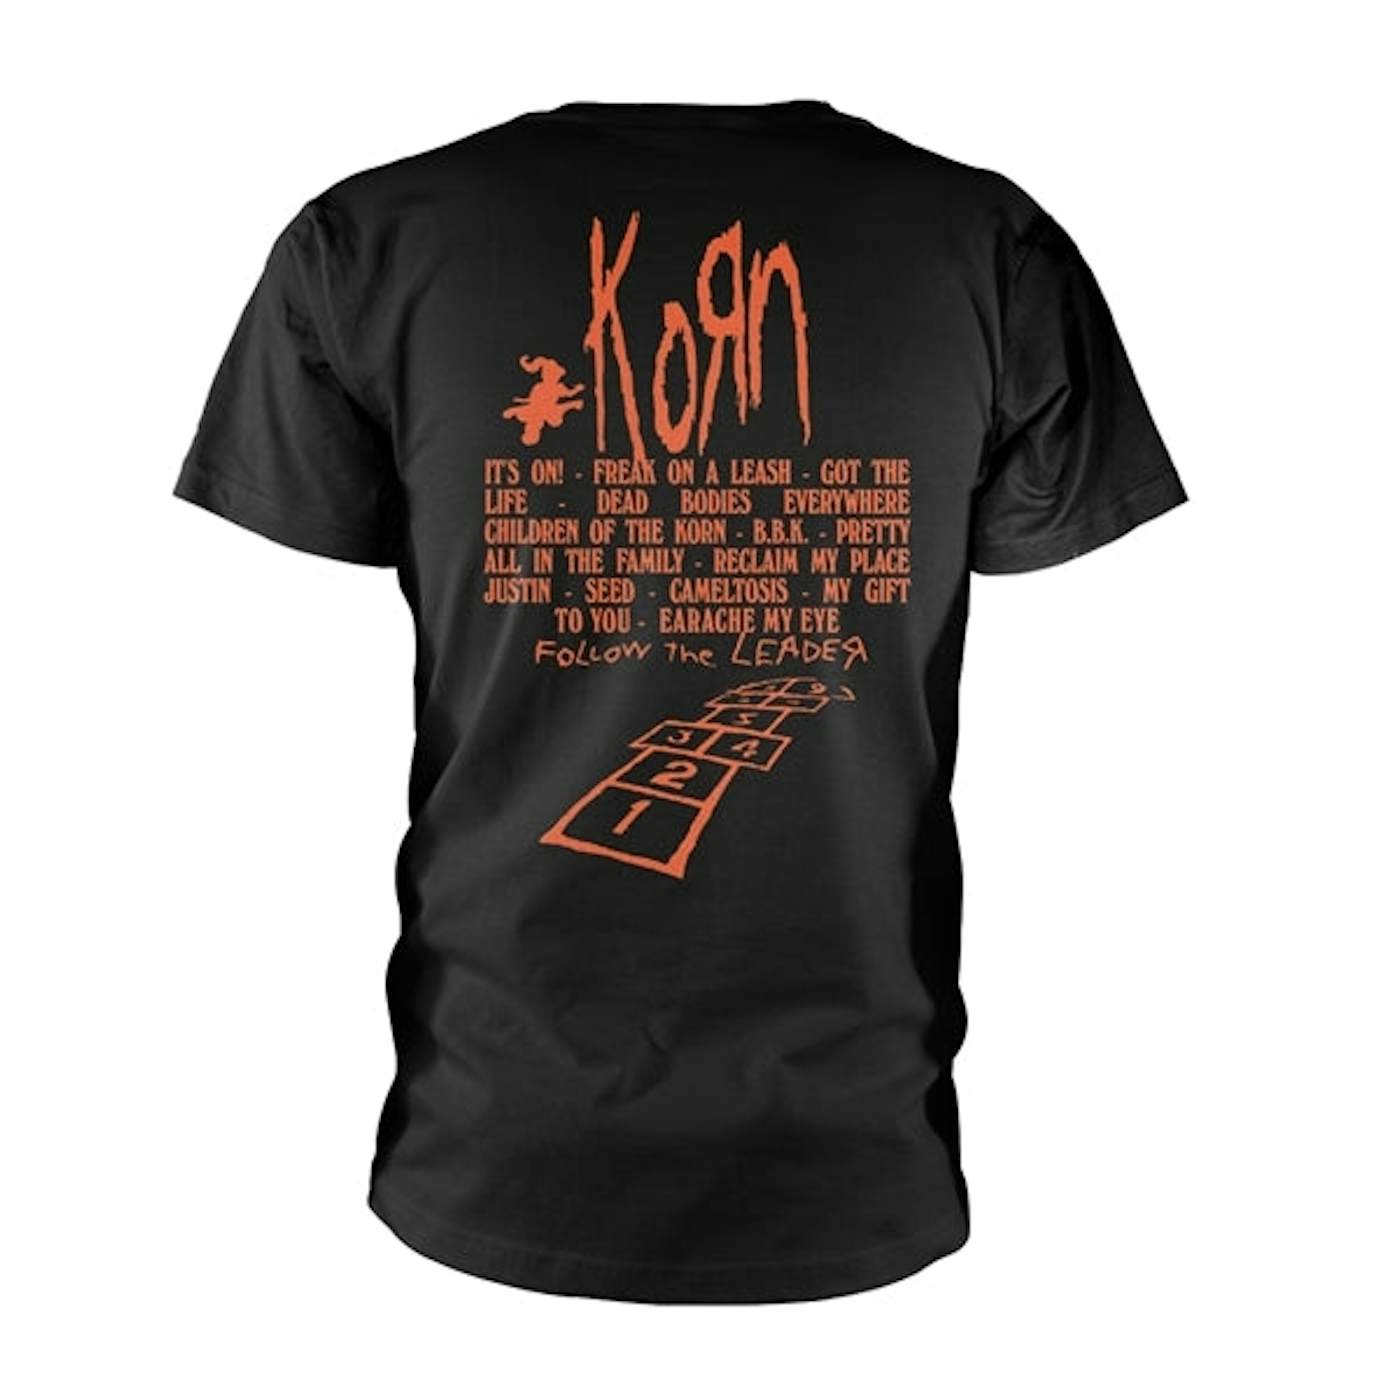 Korn T Shirt - Hopscotch Flame